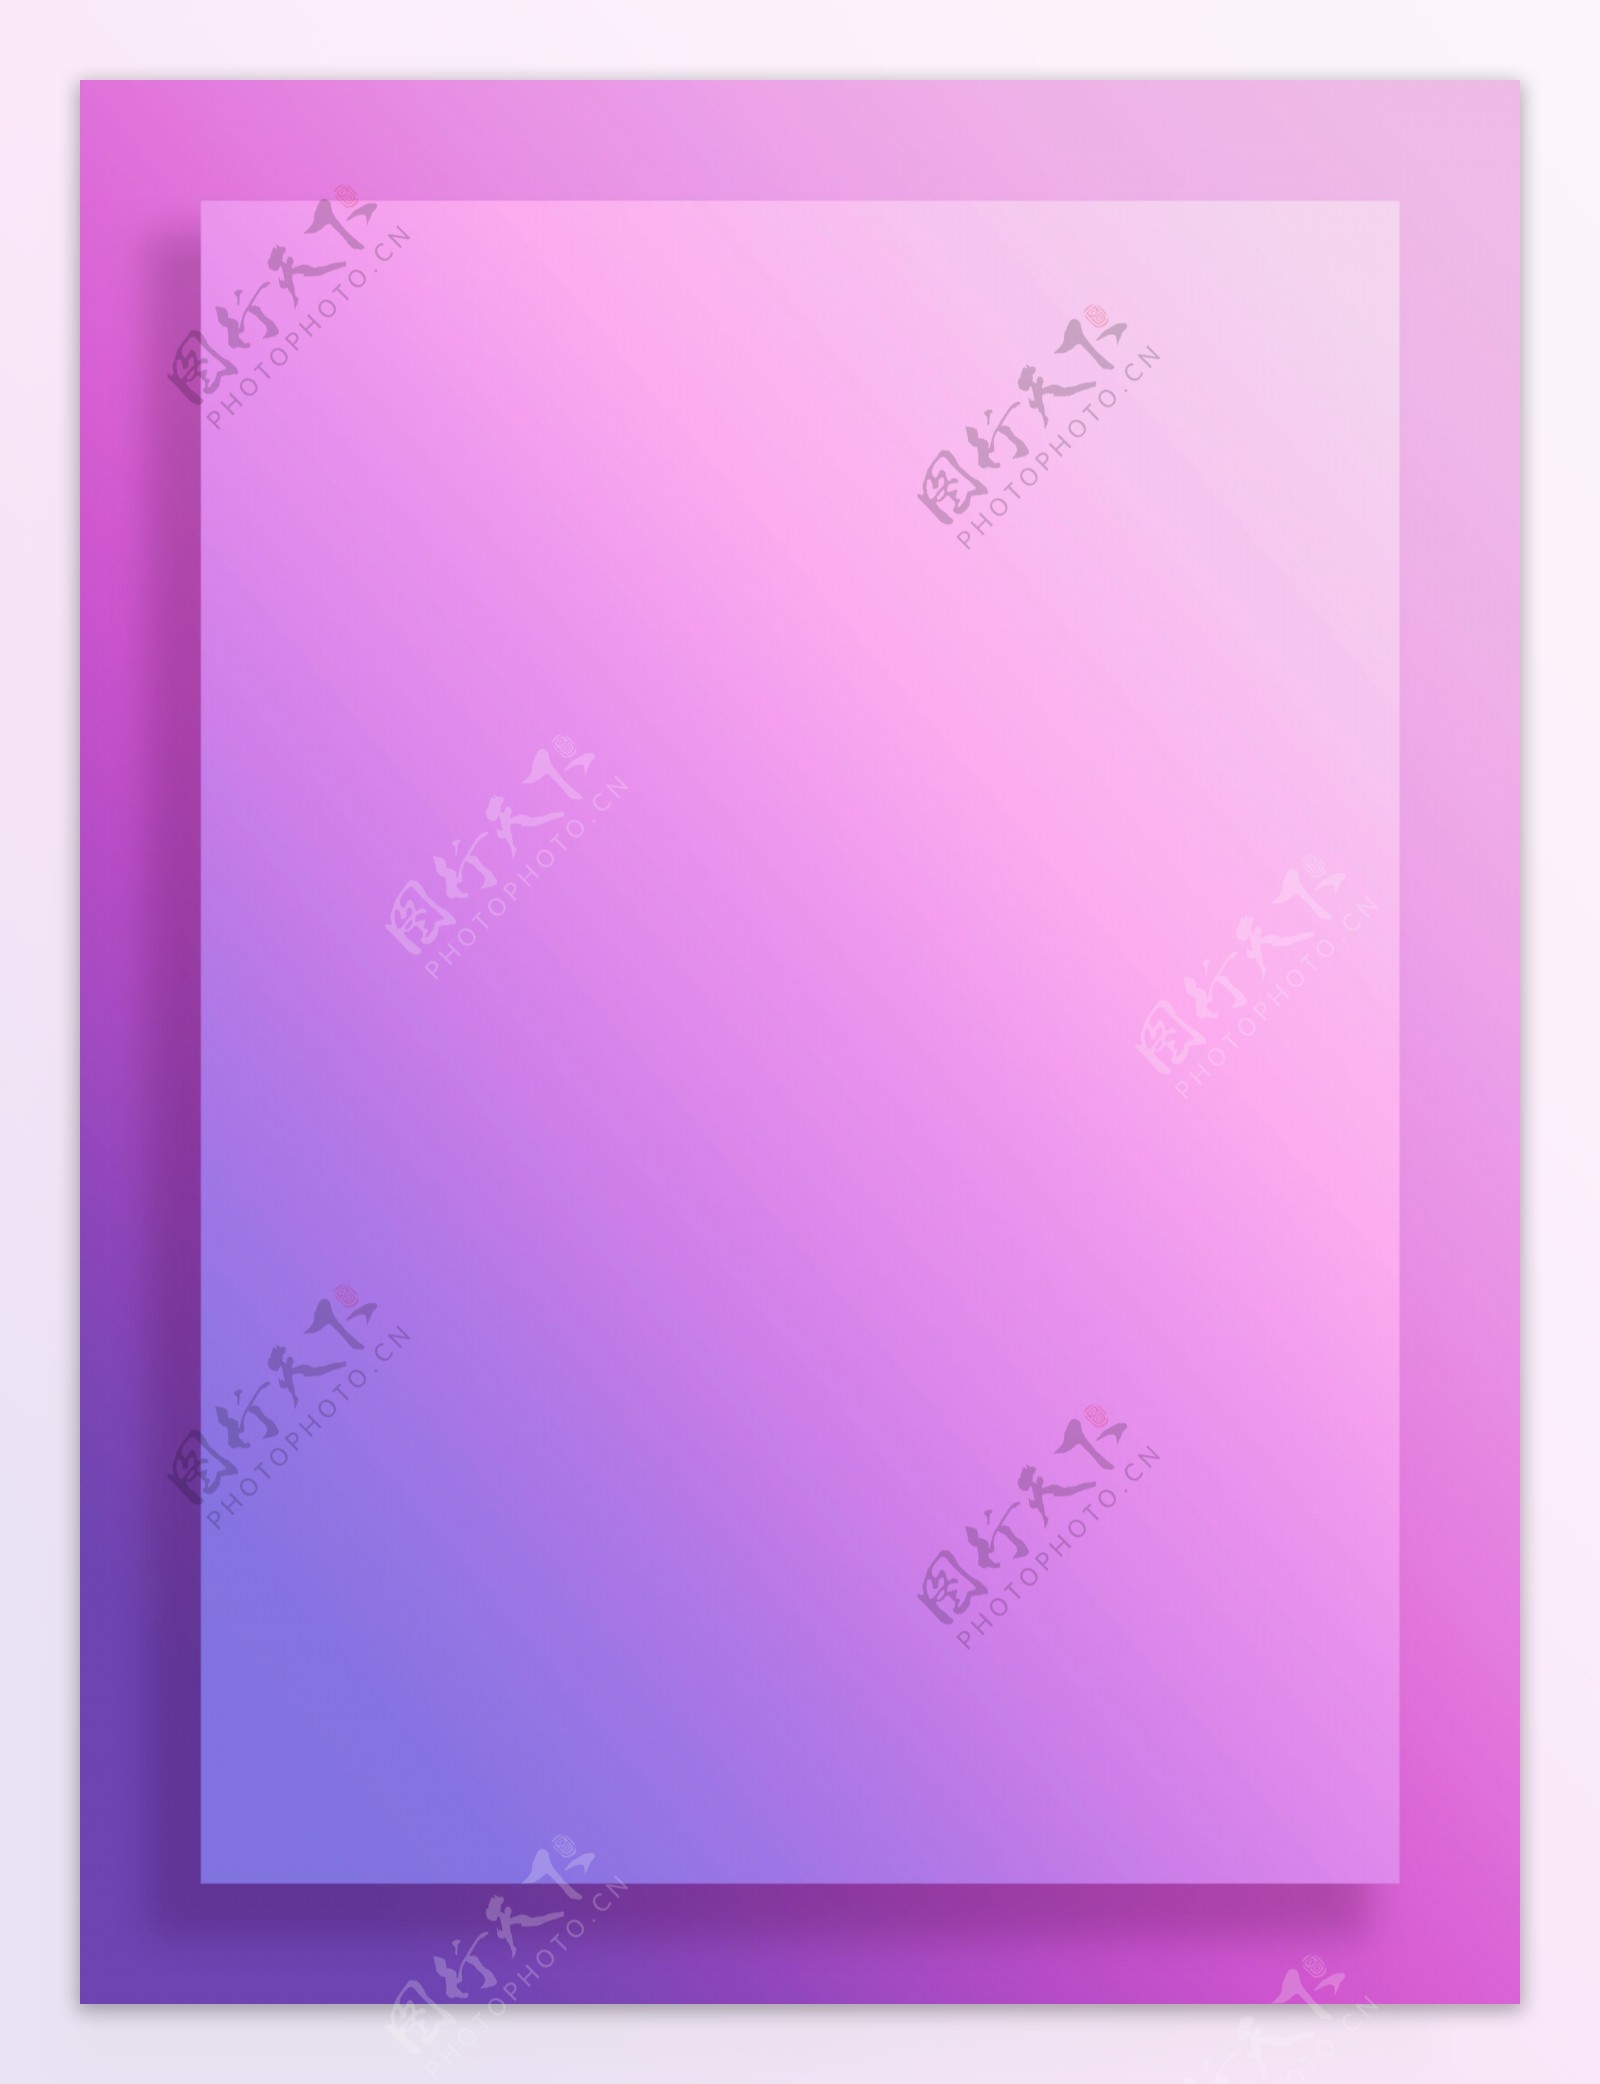 全原创粉紫色简约渐变背景边框素材